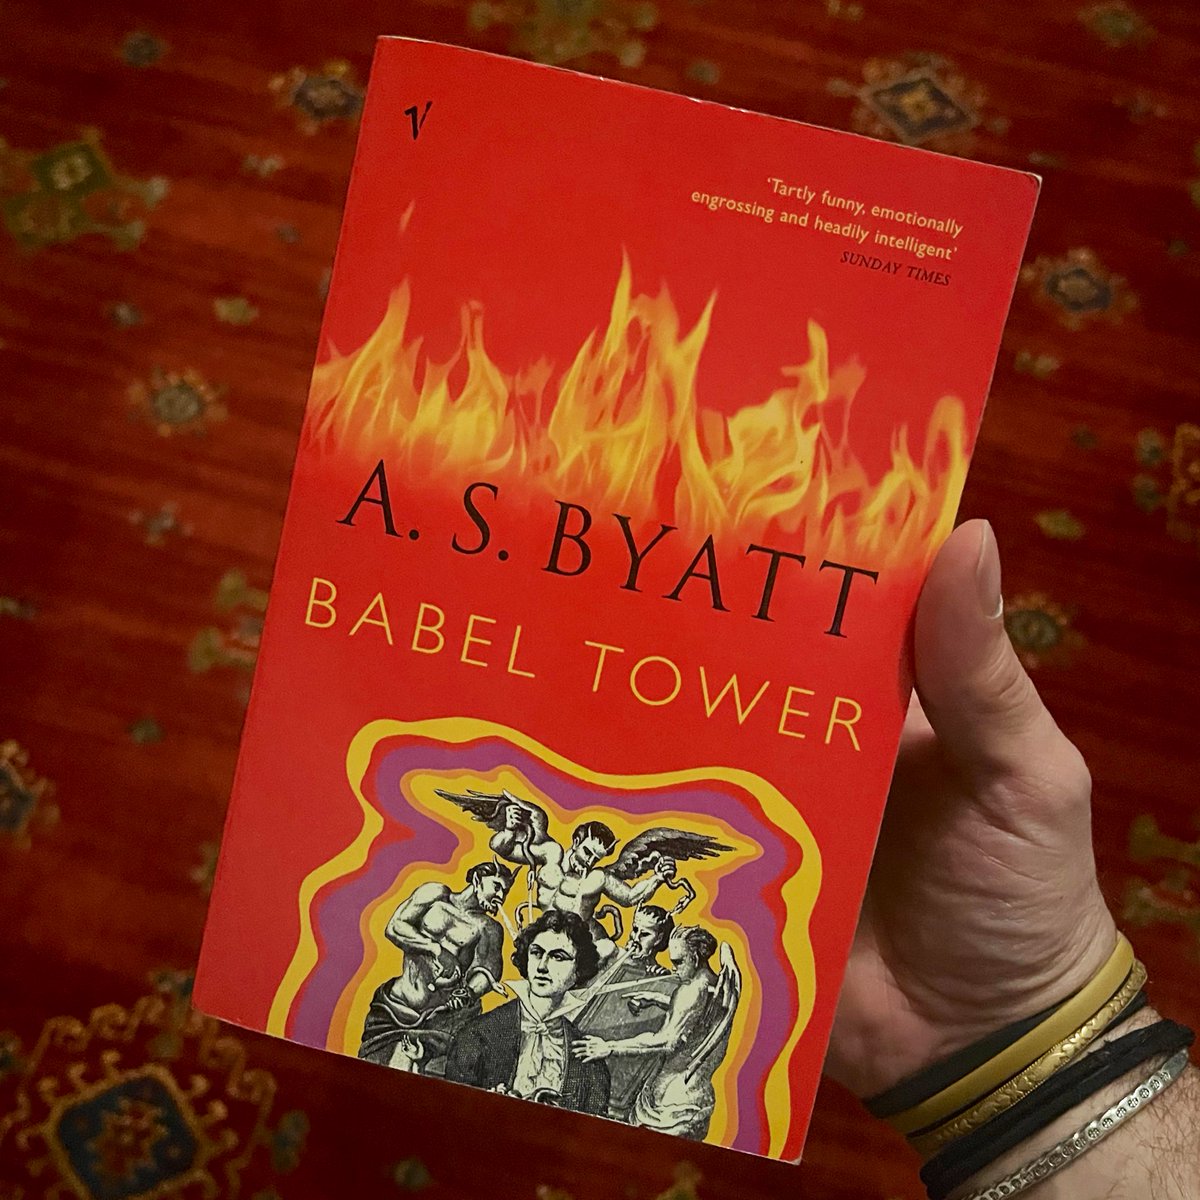 Sevdiğim yazarlardan A. S. Byatt hayatını kaybetmiş. Eserlerinin arasında bir roman “dörtlüsü” vardır, ona dahil ‘Babil Kulesi’ adlı romanı ayrı bir yere koyarım. Kitap önerisi olsun madem. 😔